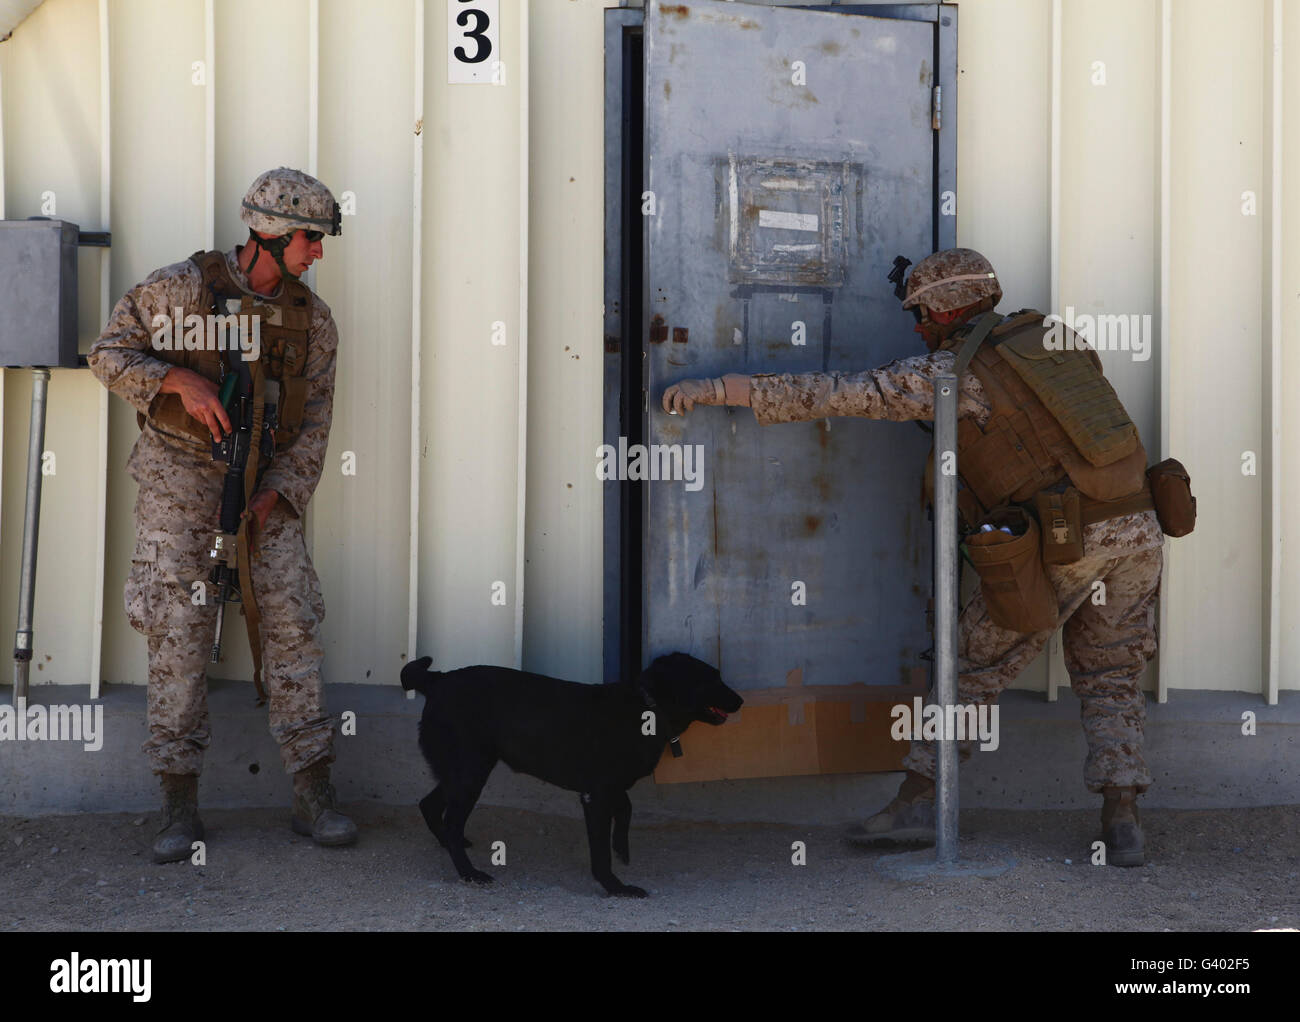 Dog handlers conduct improvised explosive device training. Stock Photo